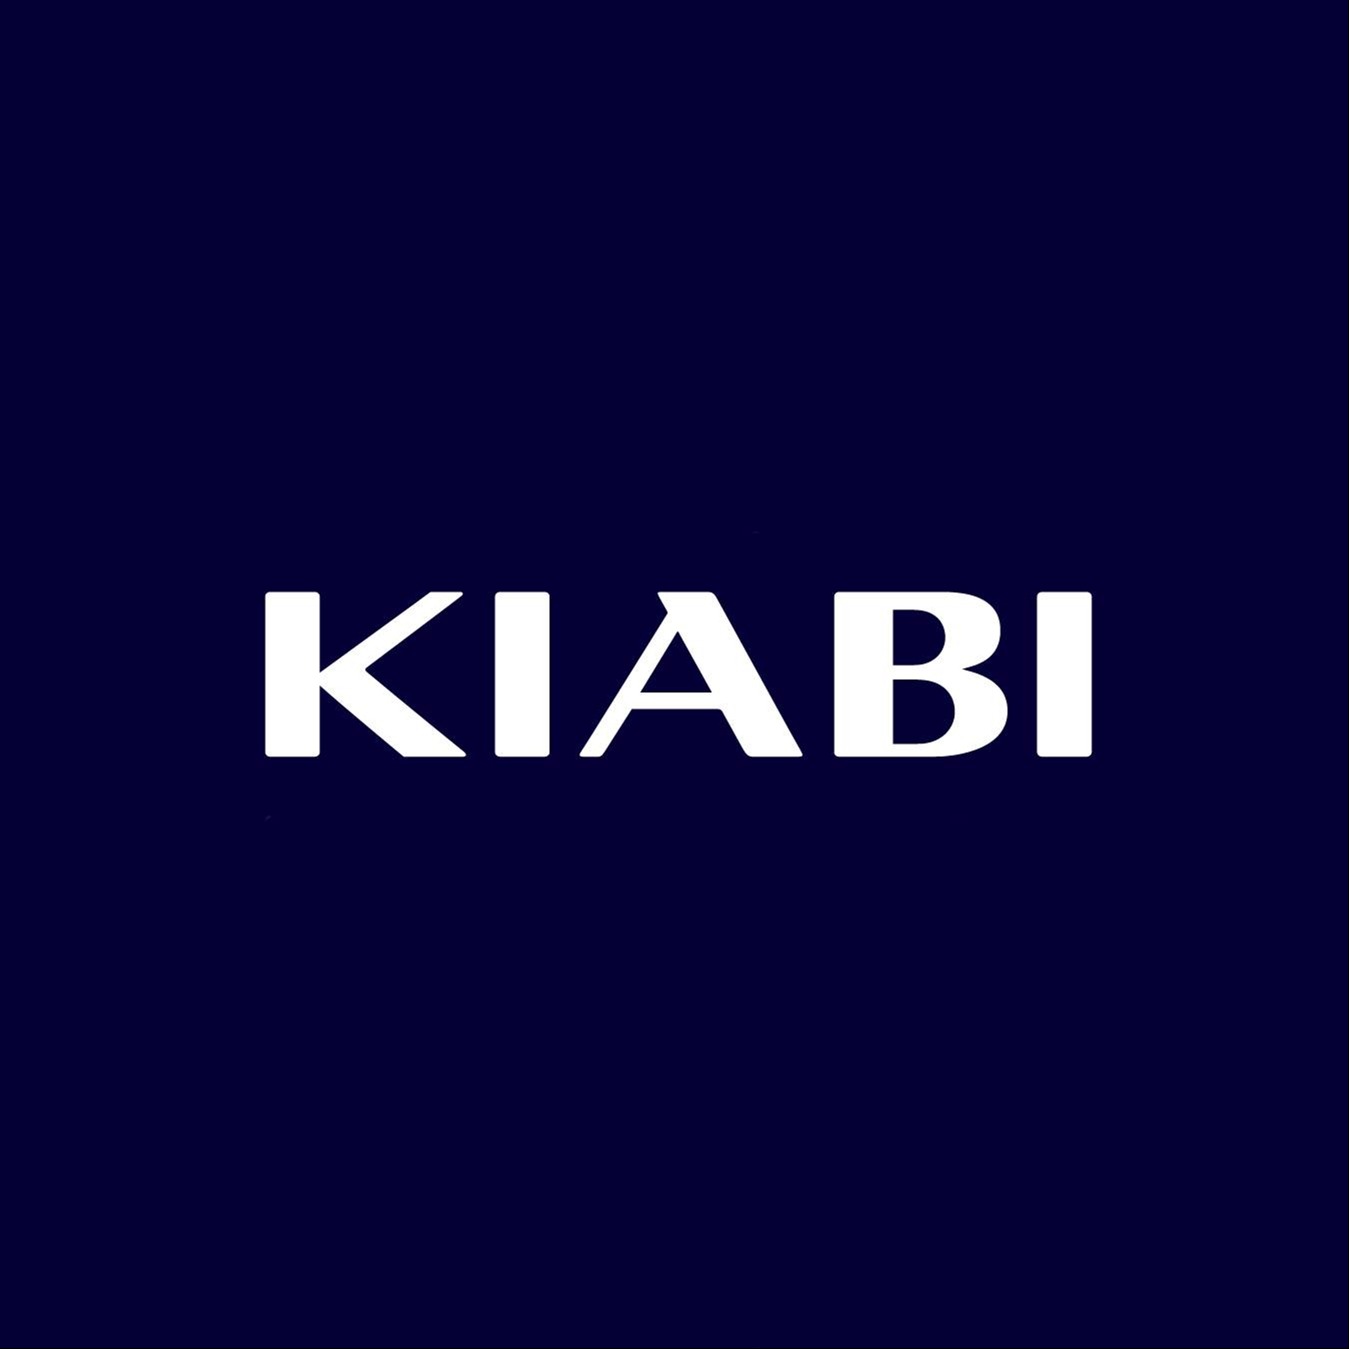 Kiabi España